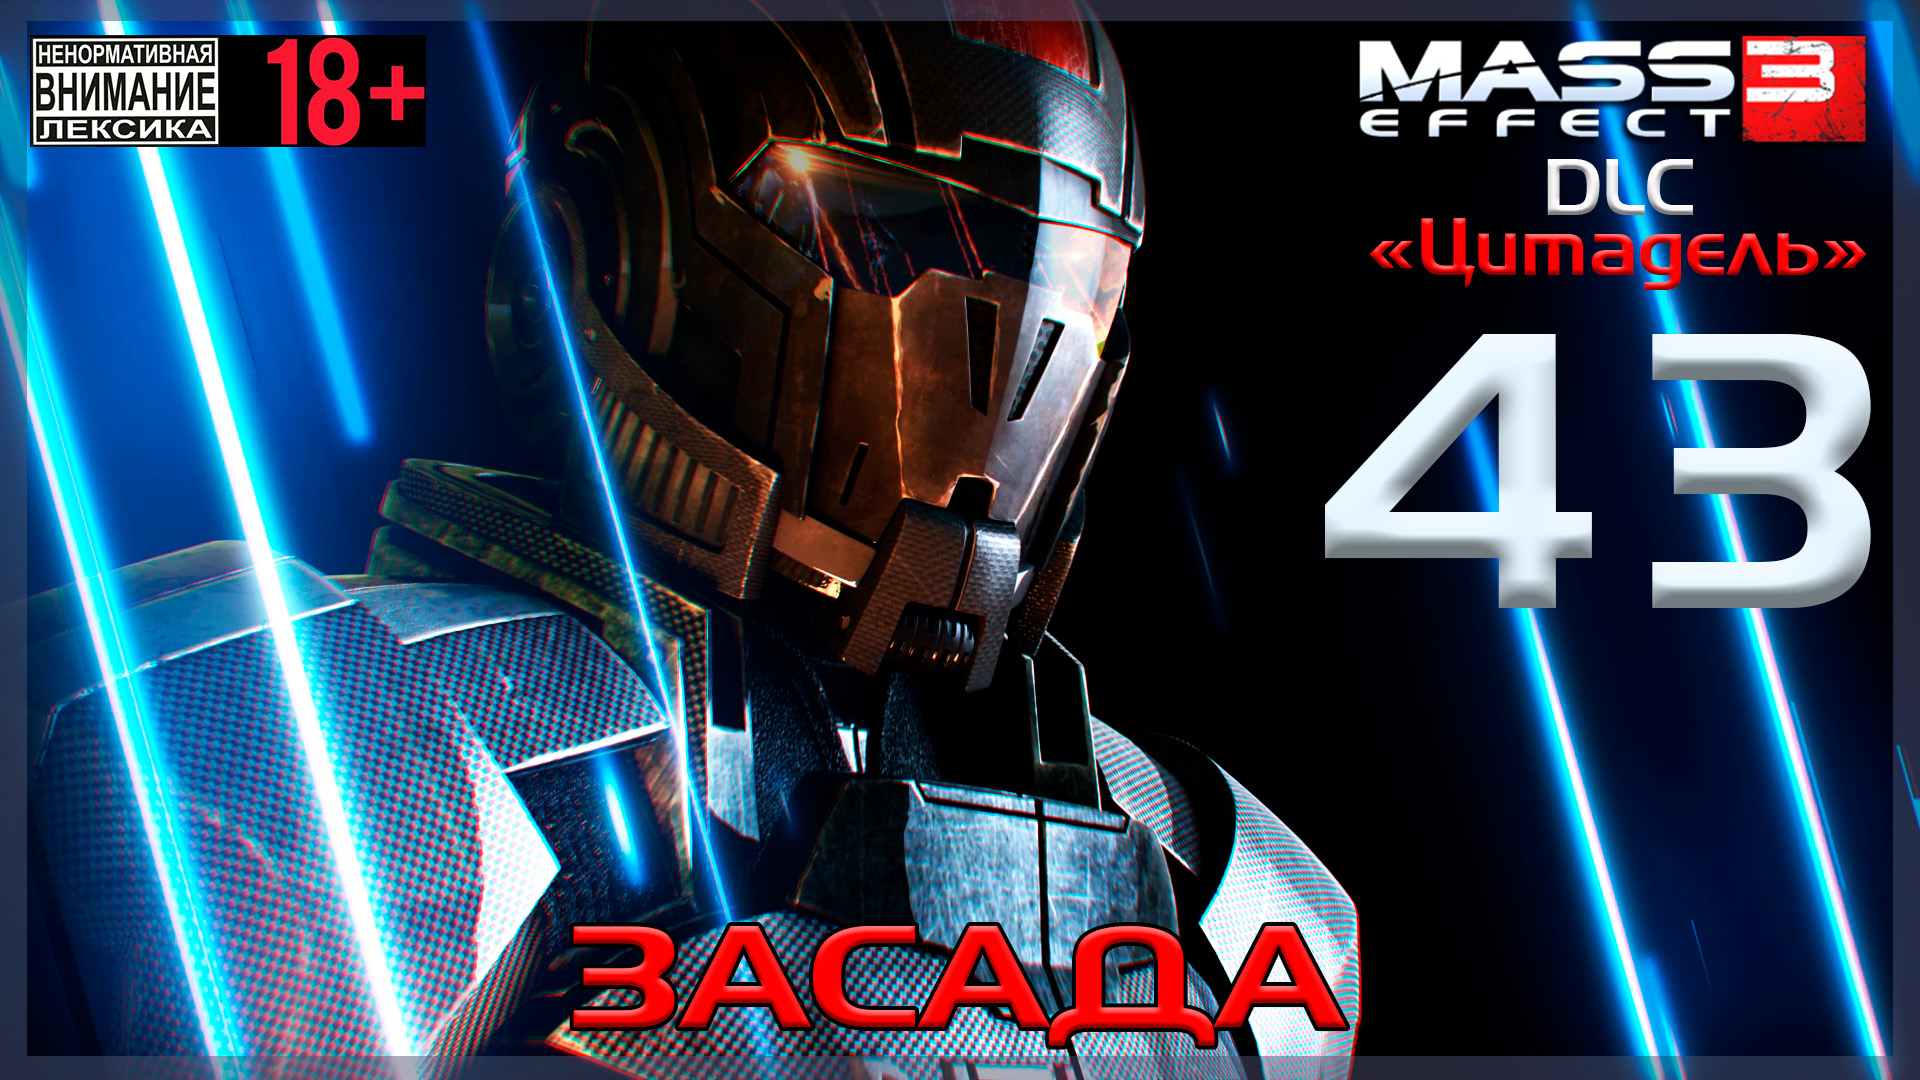 Mass Effect 3 - DLC Цитадель / Original #43 Засада